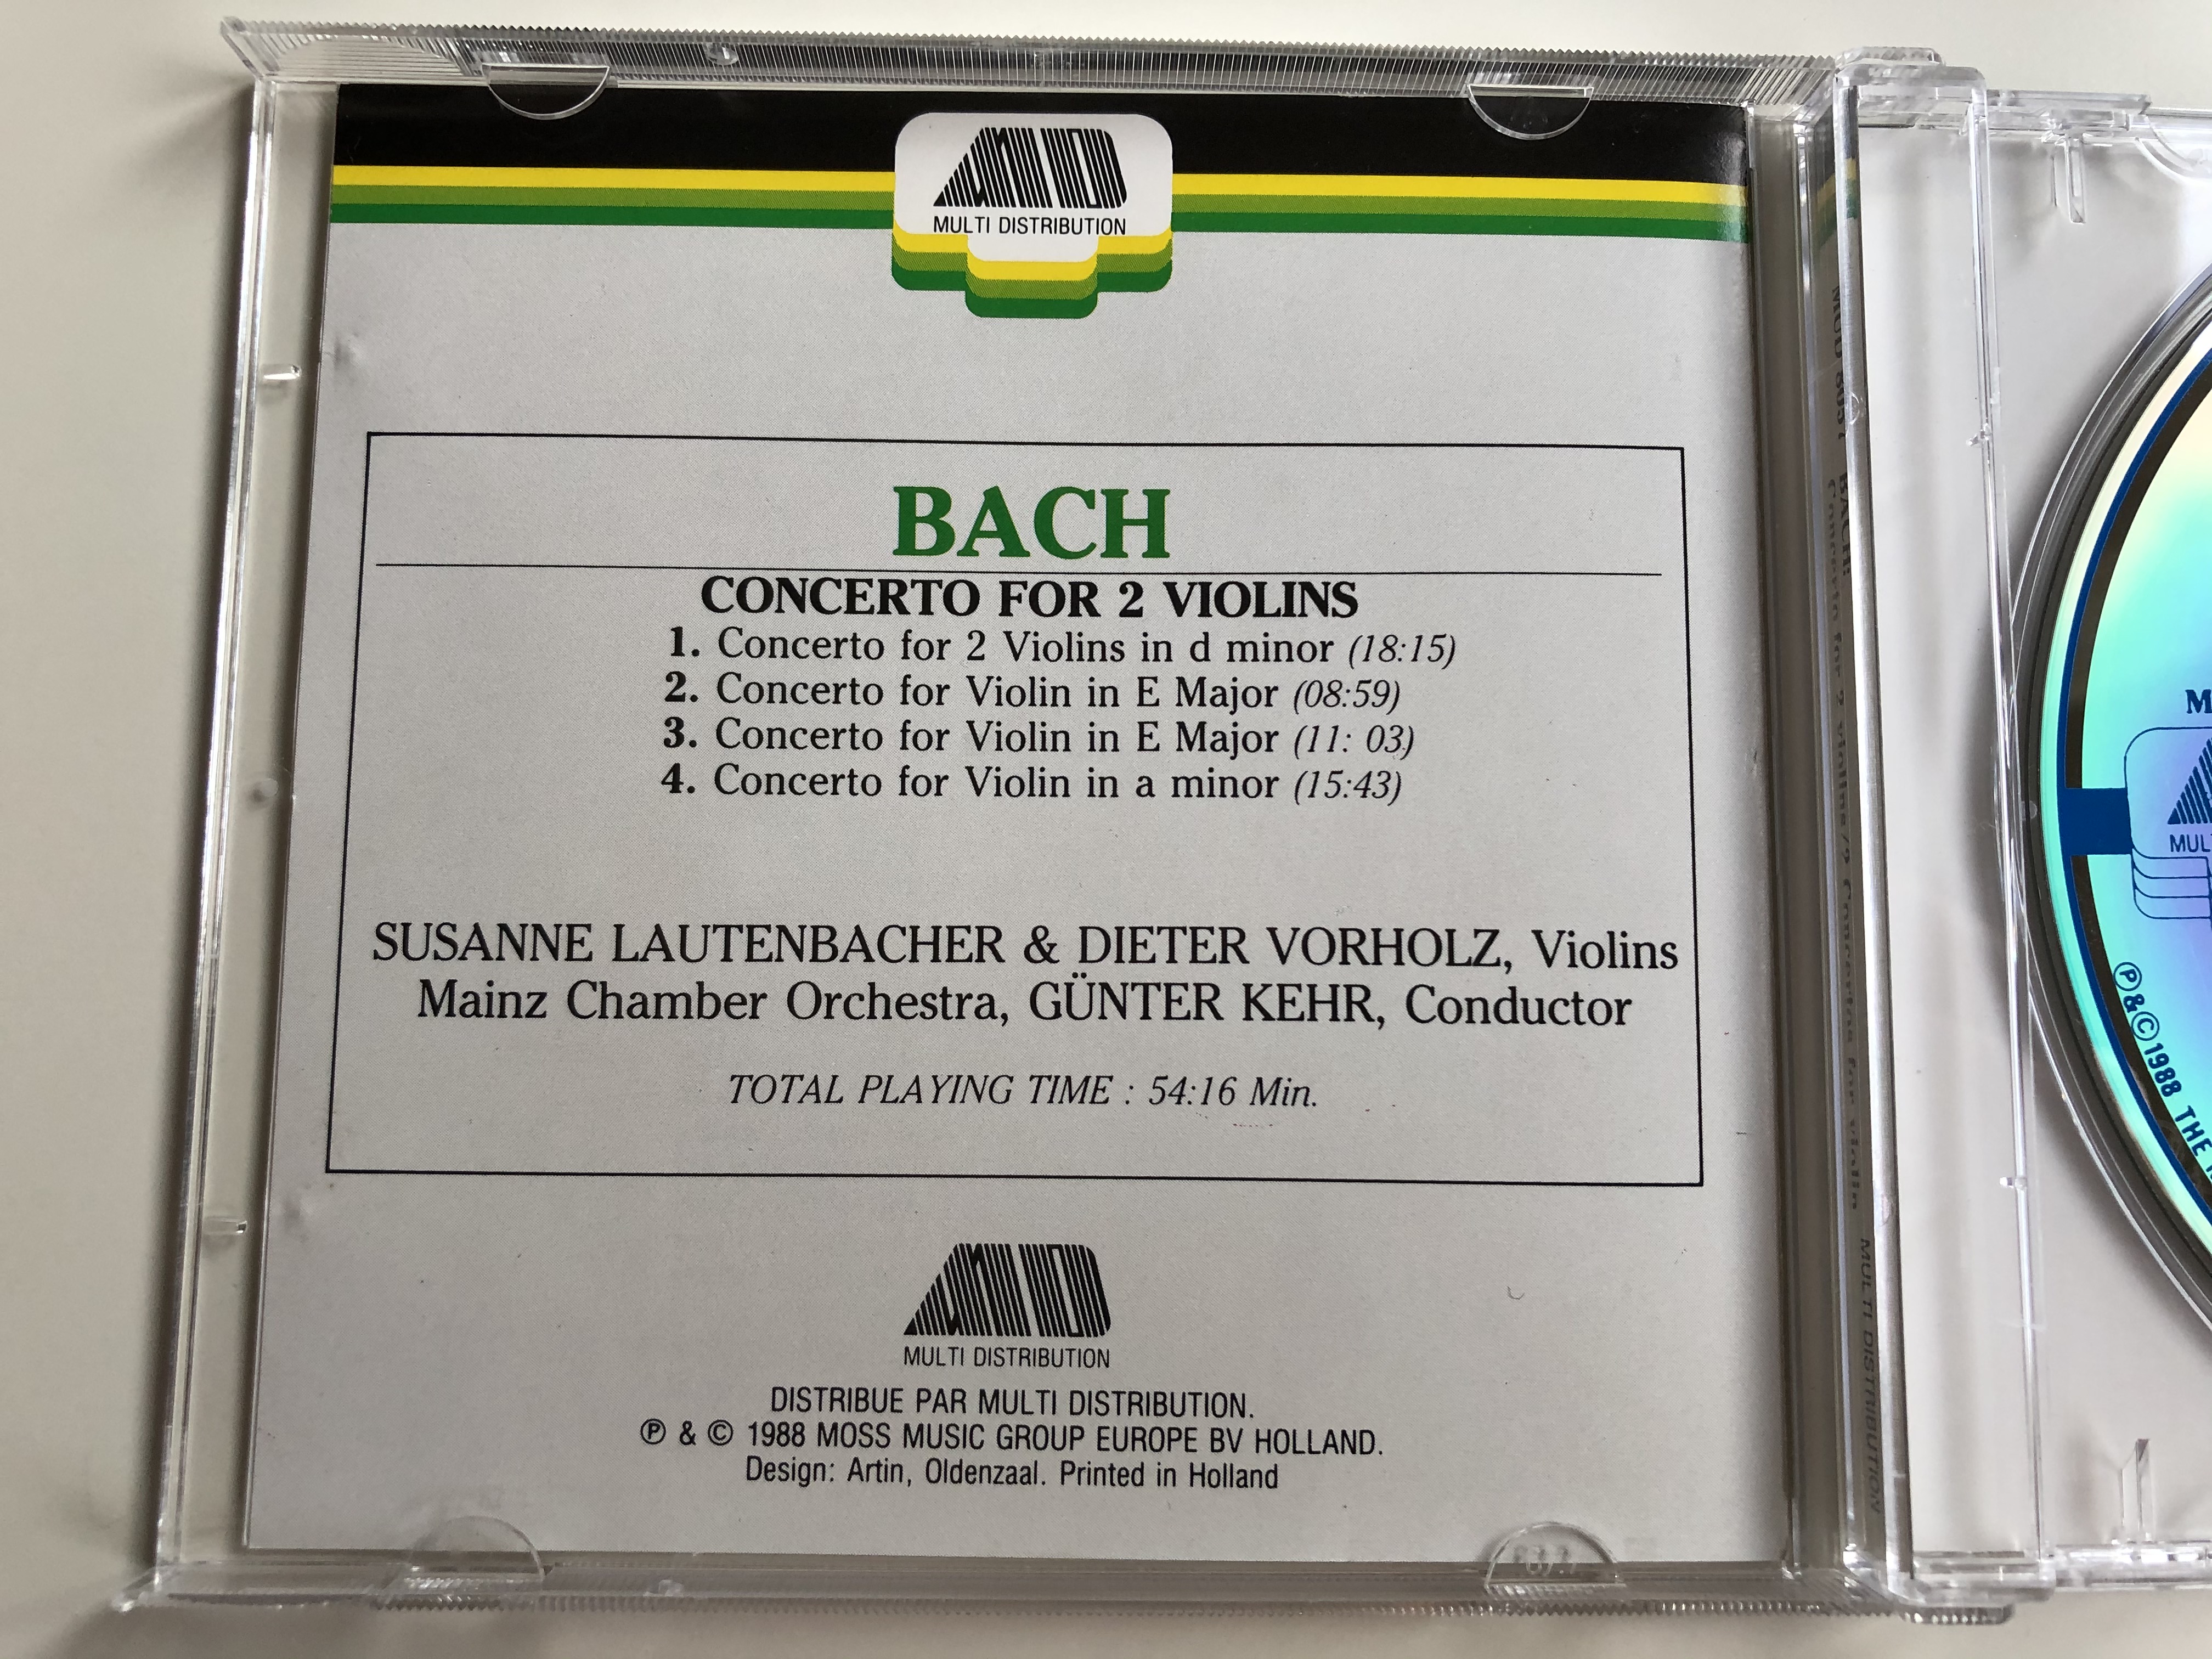 bach-concerto-for-2-violins-in-d-minor-2-concertos-for-violin-in-a-minor-in-e-major-violins-susanne-lautenbacher-dieter-volholz-conductor-gunter-kehr-mainz-chamber-ochestra-multi-distrib-3-.jpg